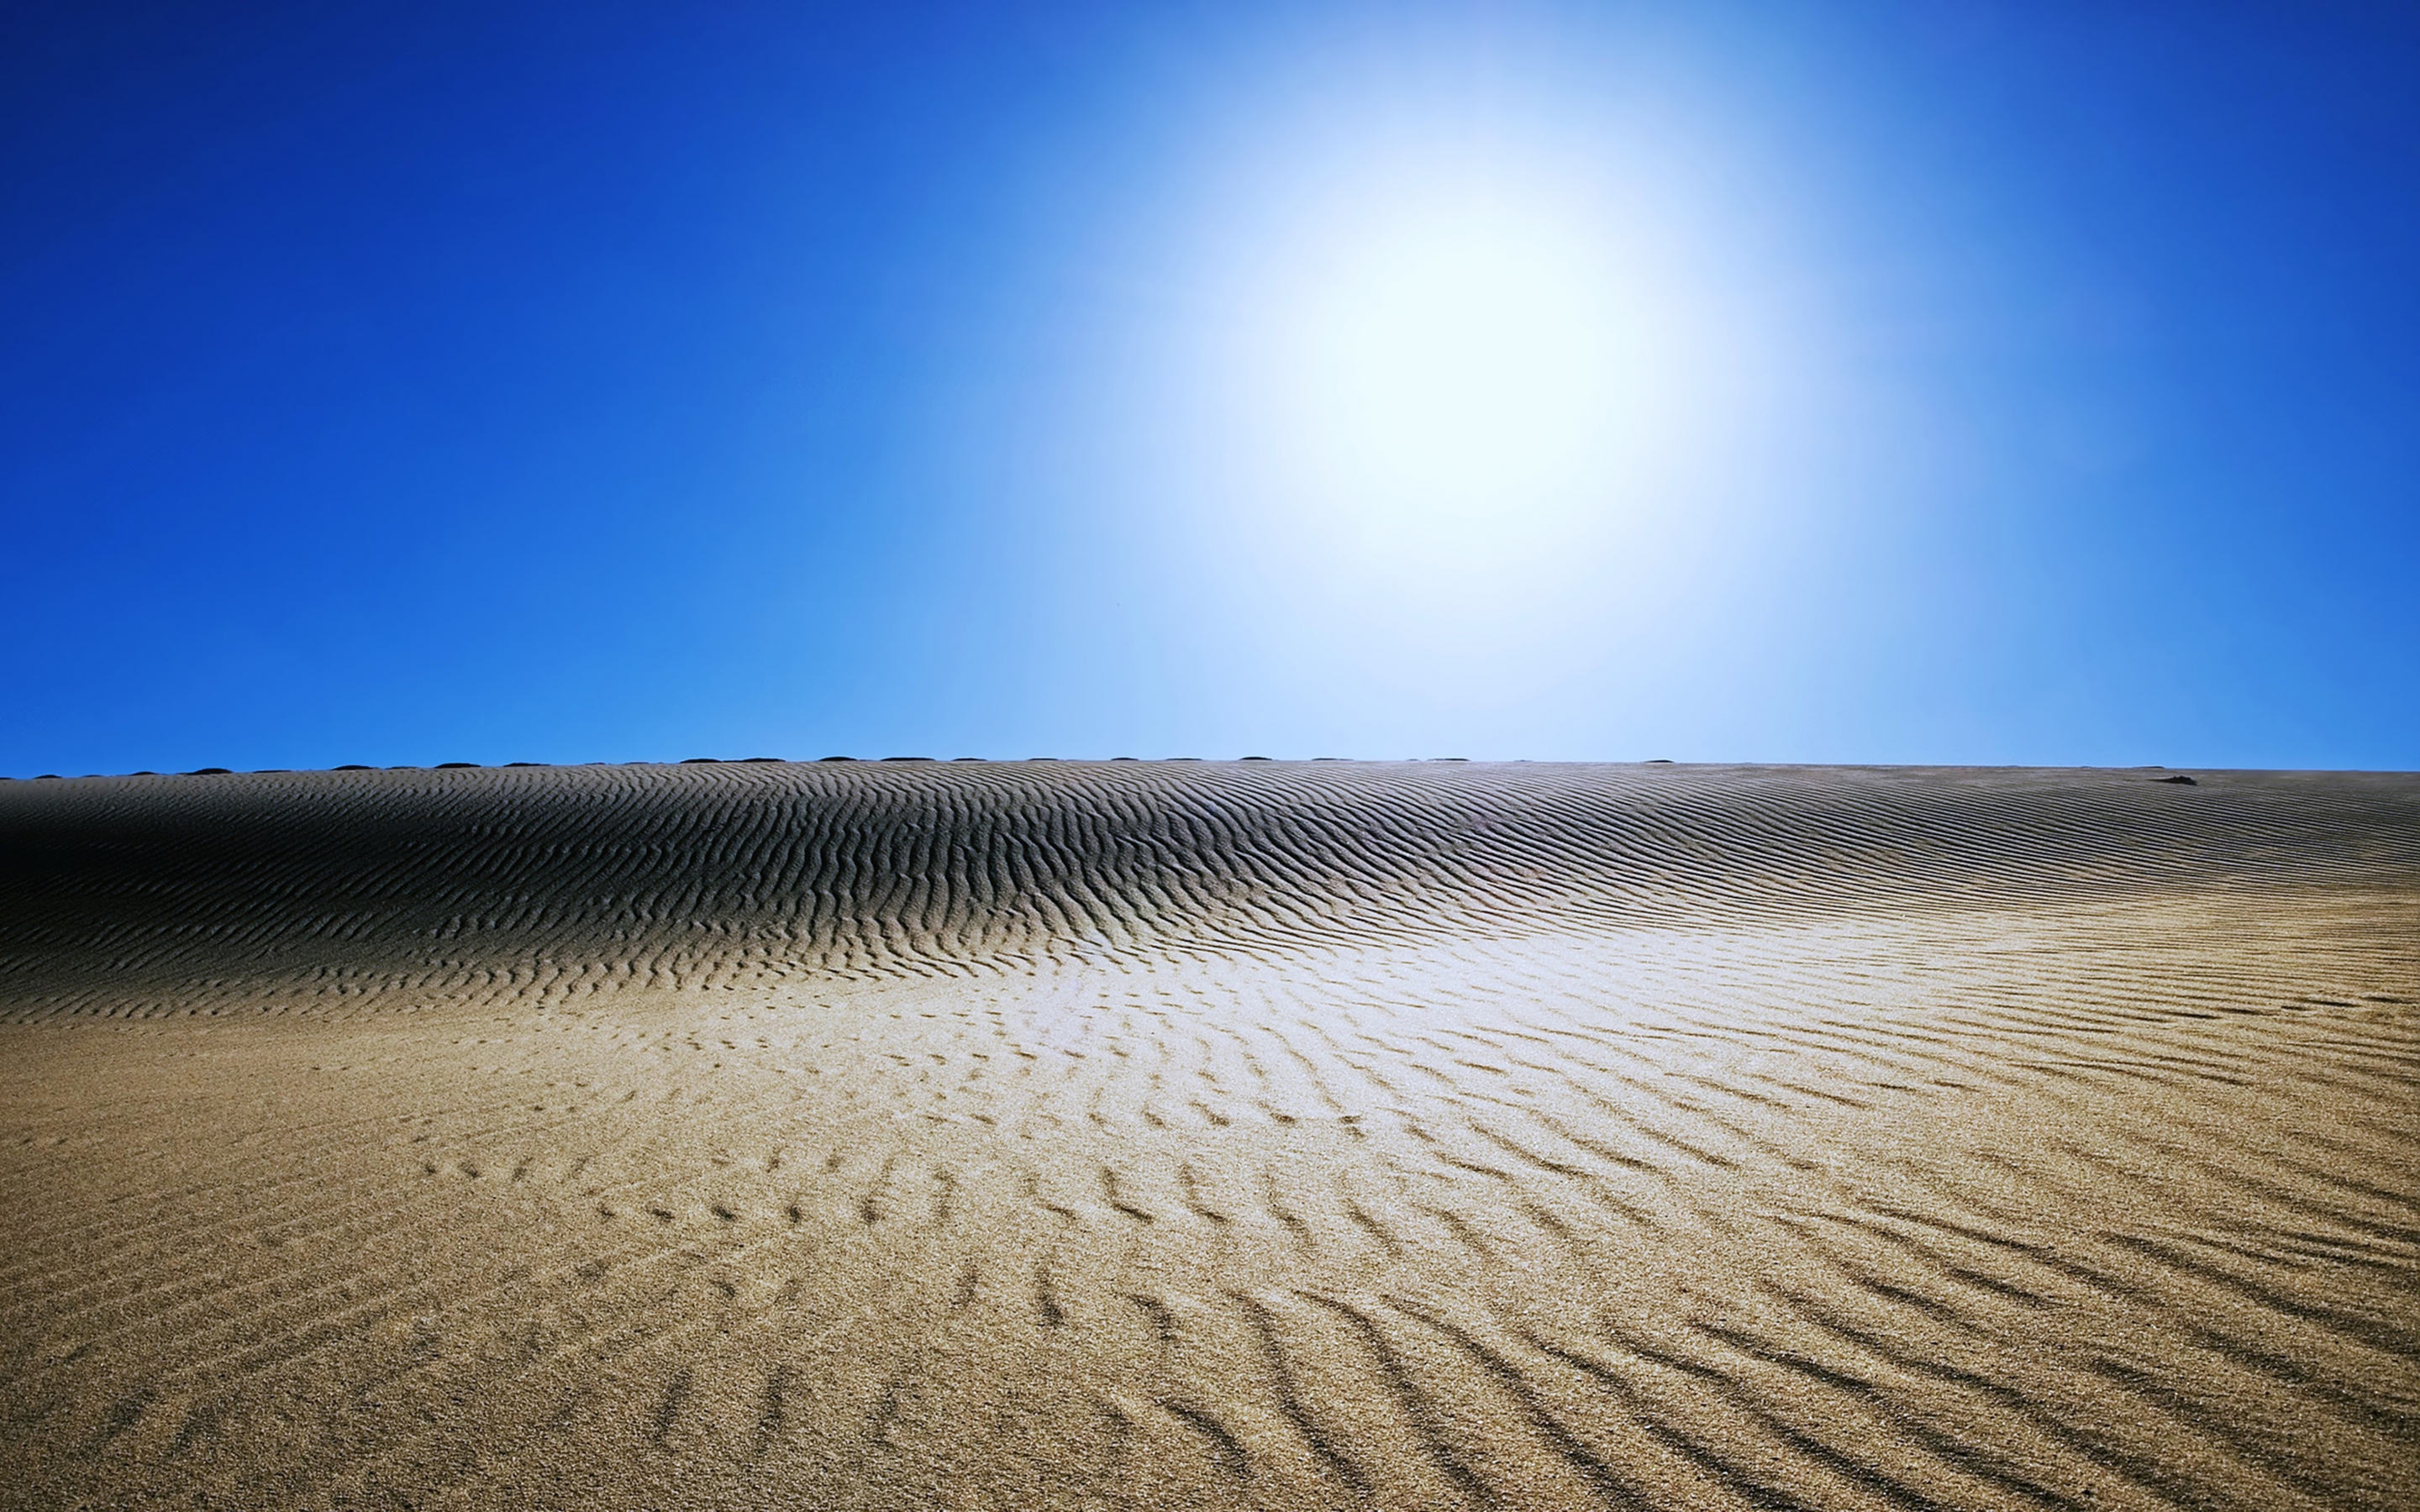 Sahara, sunny day, desert, landscape, 2880x1800 wallpaper